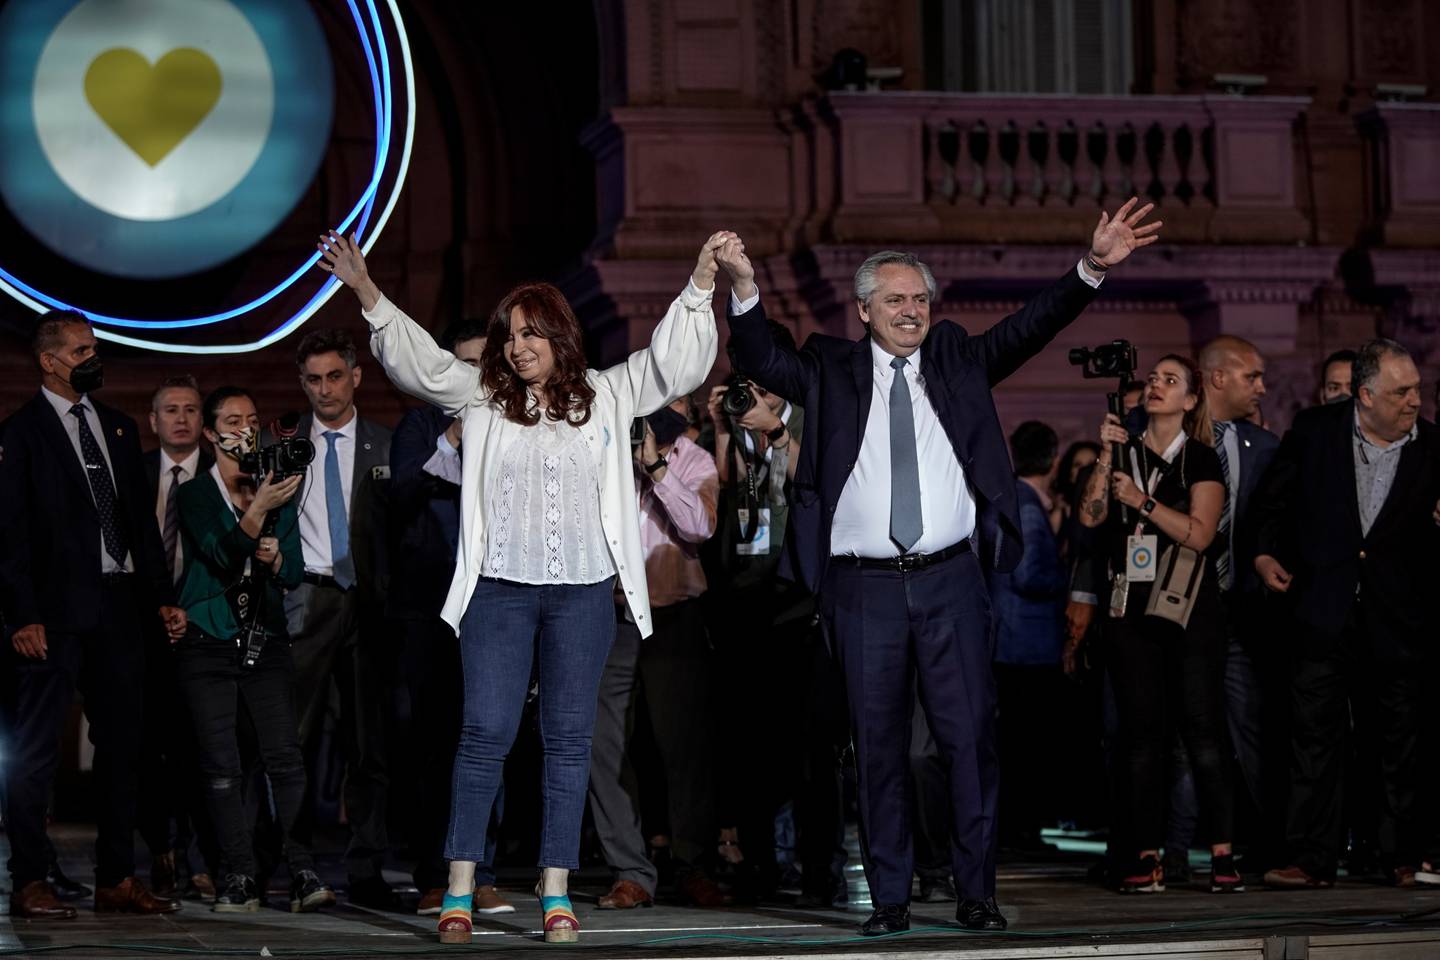 Cristina Fernández de Kirchner, vicepresidenta de Argentina, y Alberto Fernández, presidente de Argentina, saludan a la multitud en un evento en Buenos Aires, Argentina, el viernes 10 de diciembre de 2021. Foto: Sarah Pabst/Bloomberg